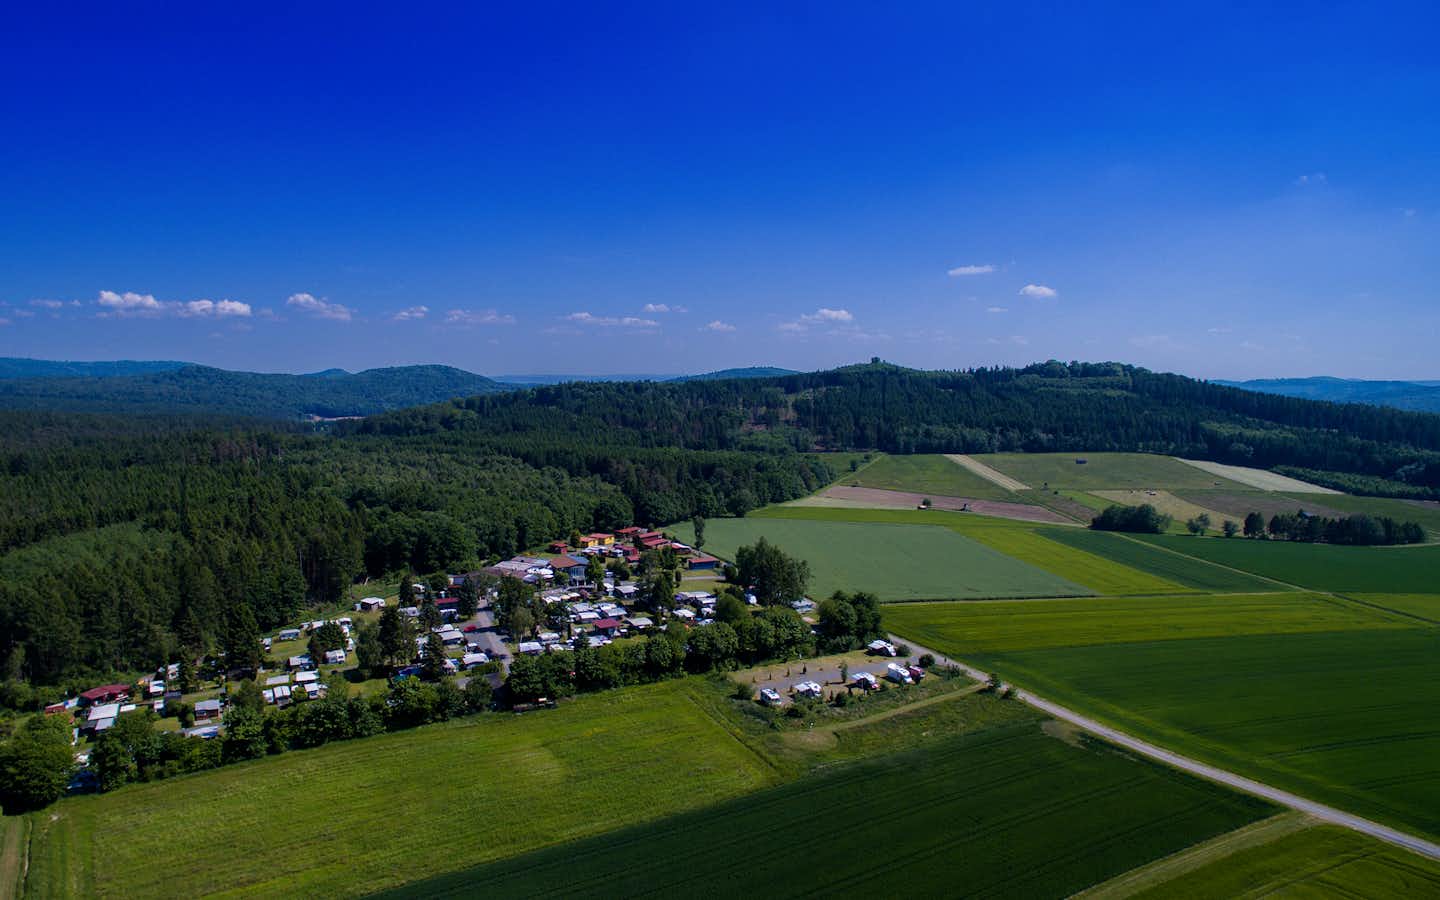 Ferienanlage Erzeberg - Campingplatz aus der Vogelperspektive